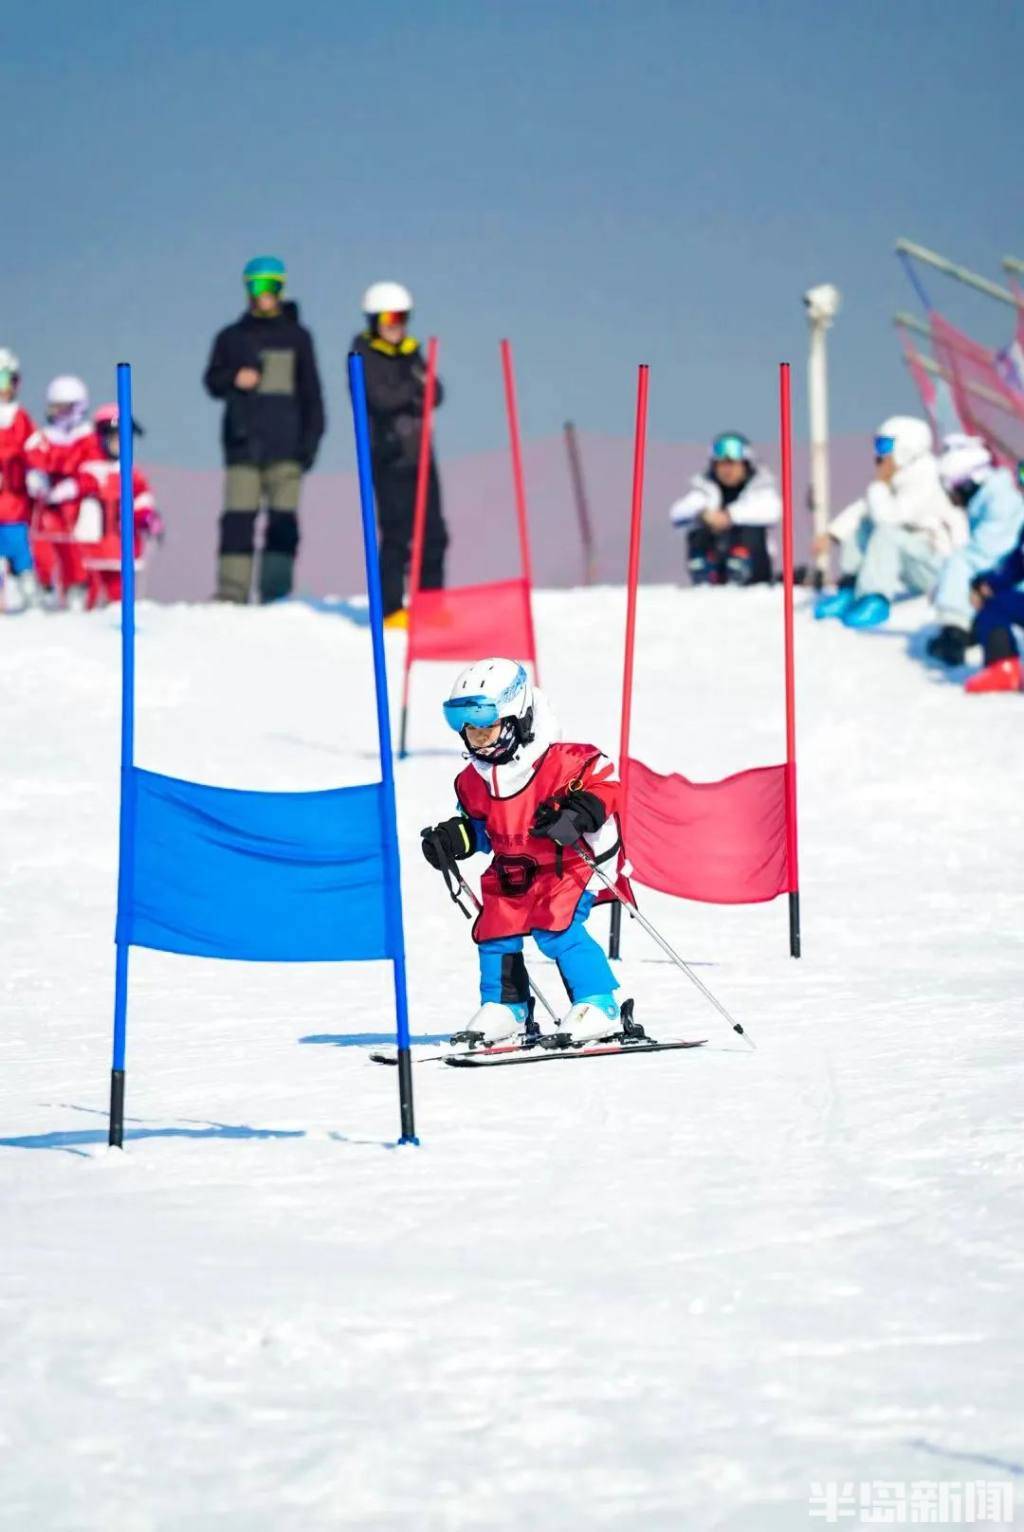 崂山150余名滑雪爱好者同场竞技,年龄最小的5岁